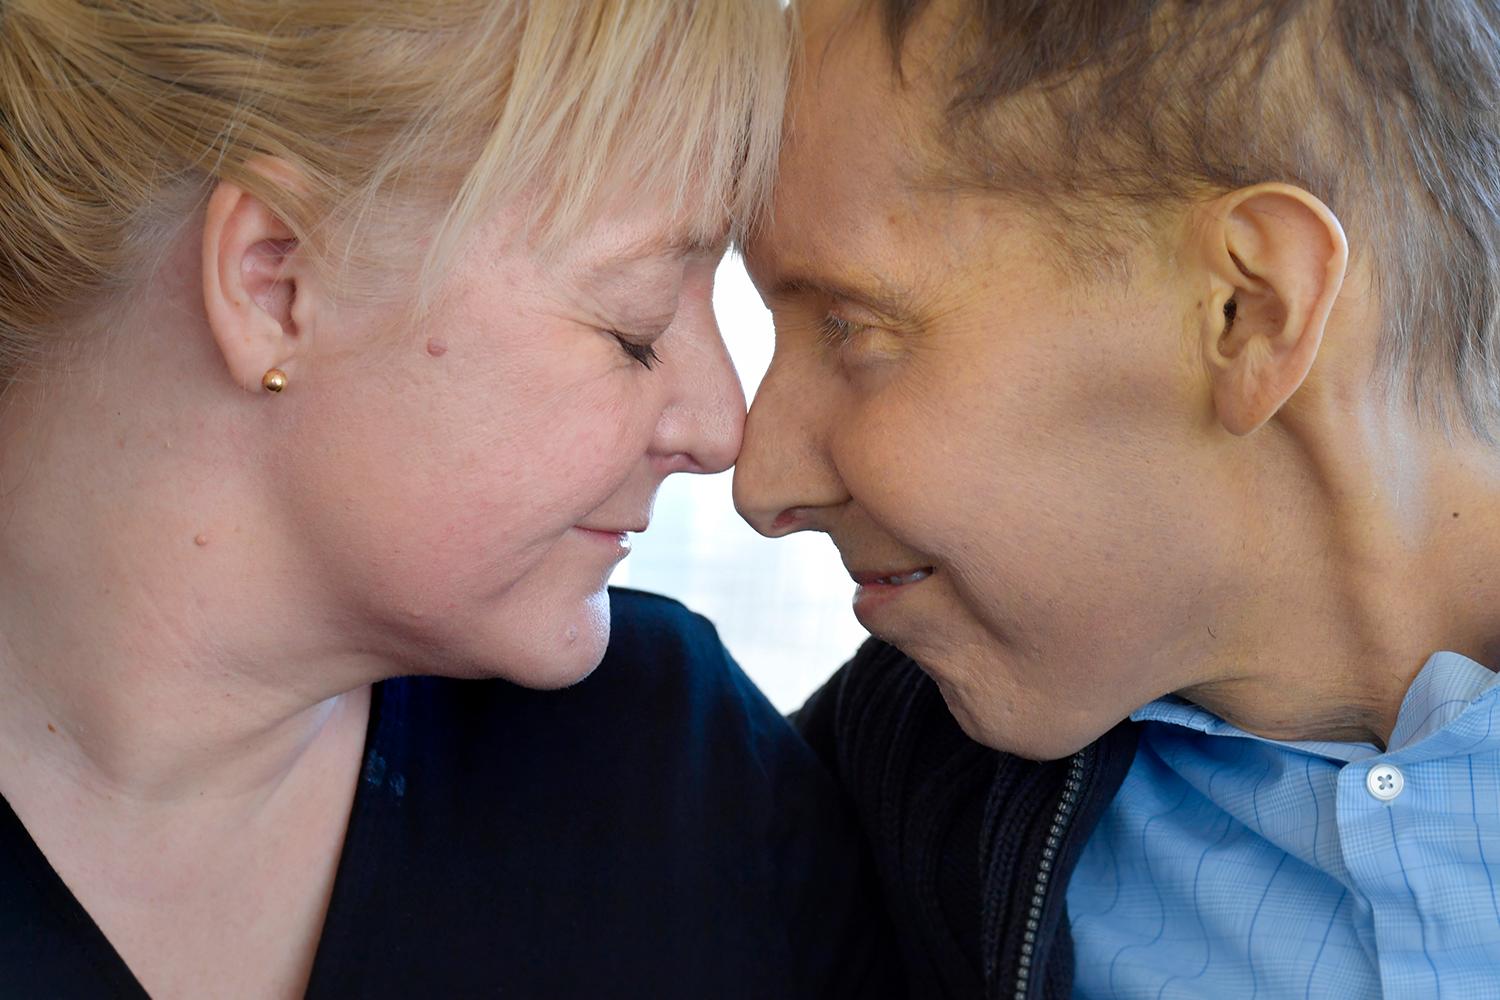 Johan Liljebo och hustrun Therese har tillsammans valt att fokusera på allt positivt som hänt under det tunga året med cancerbehandlingarna. ”Jag har haft turen att träffa en bra kvinna, vi har varit ett bra team.”